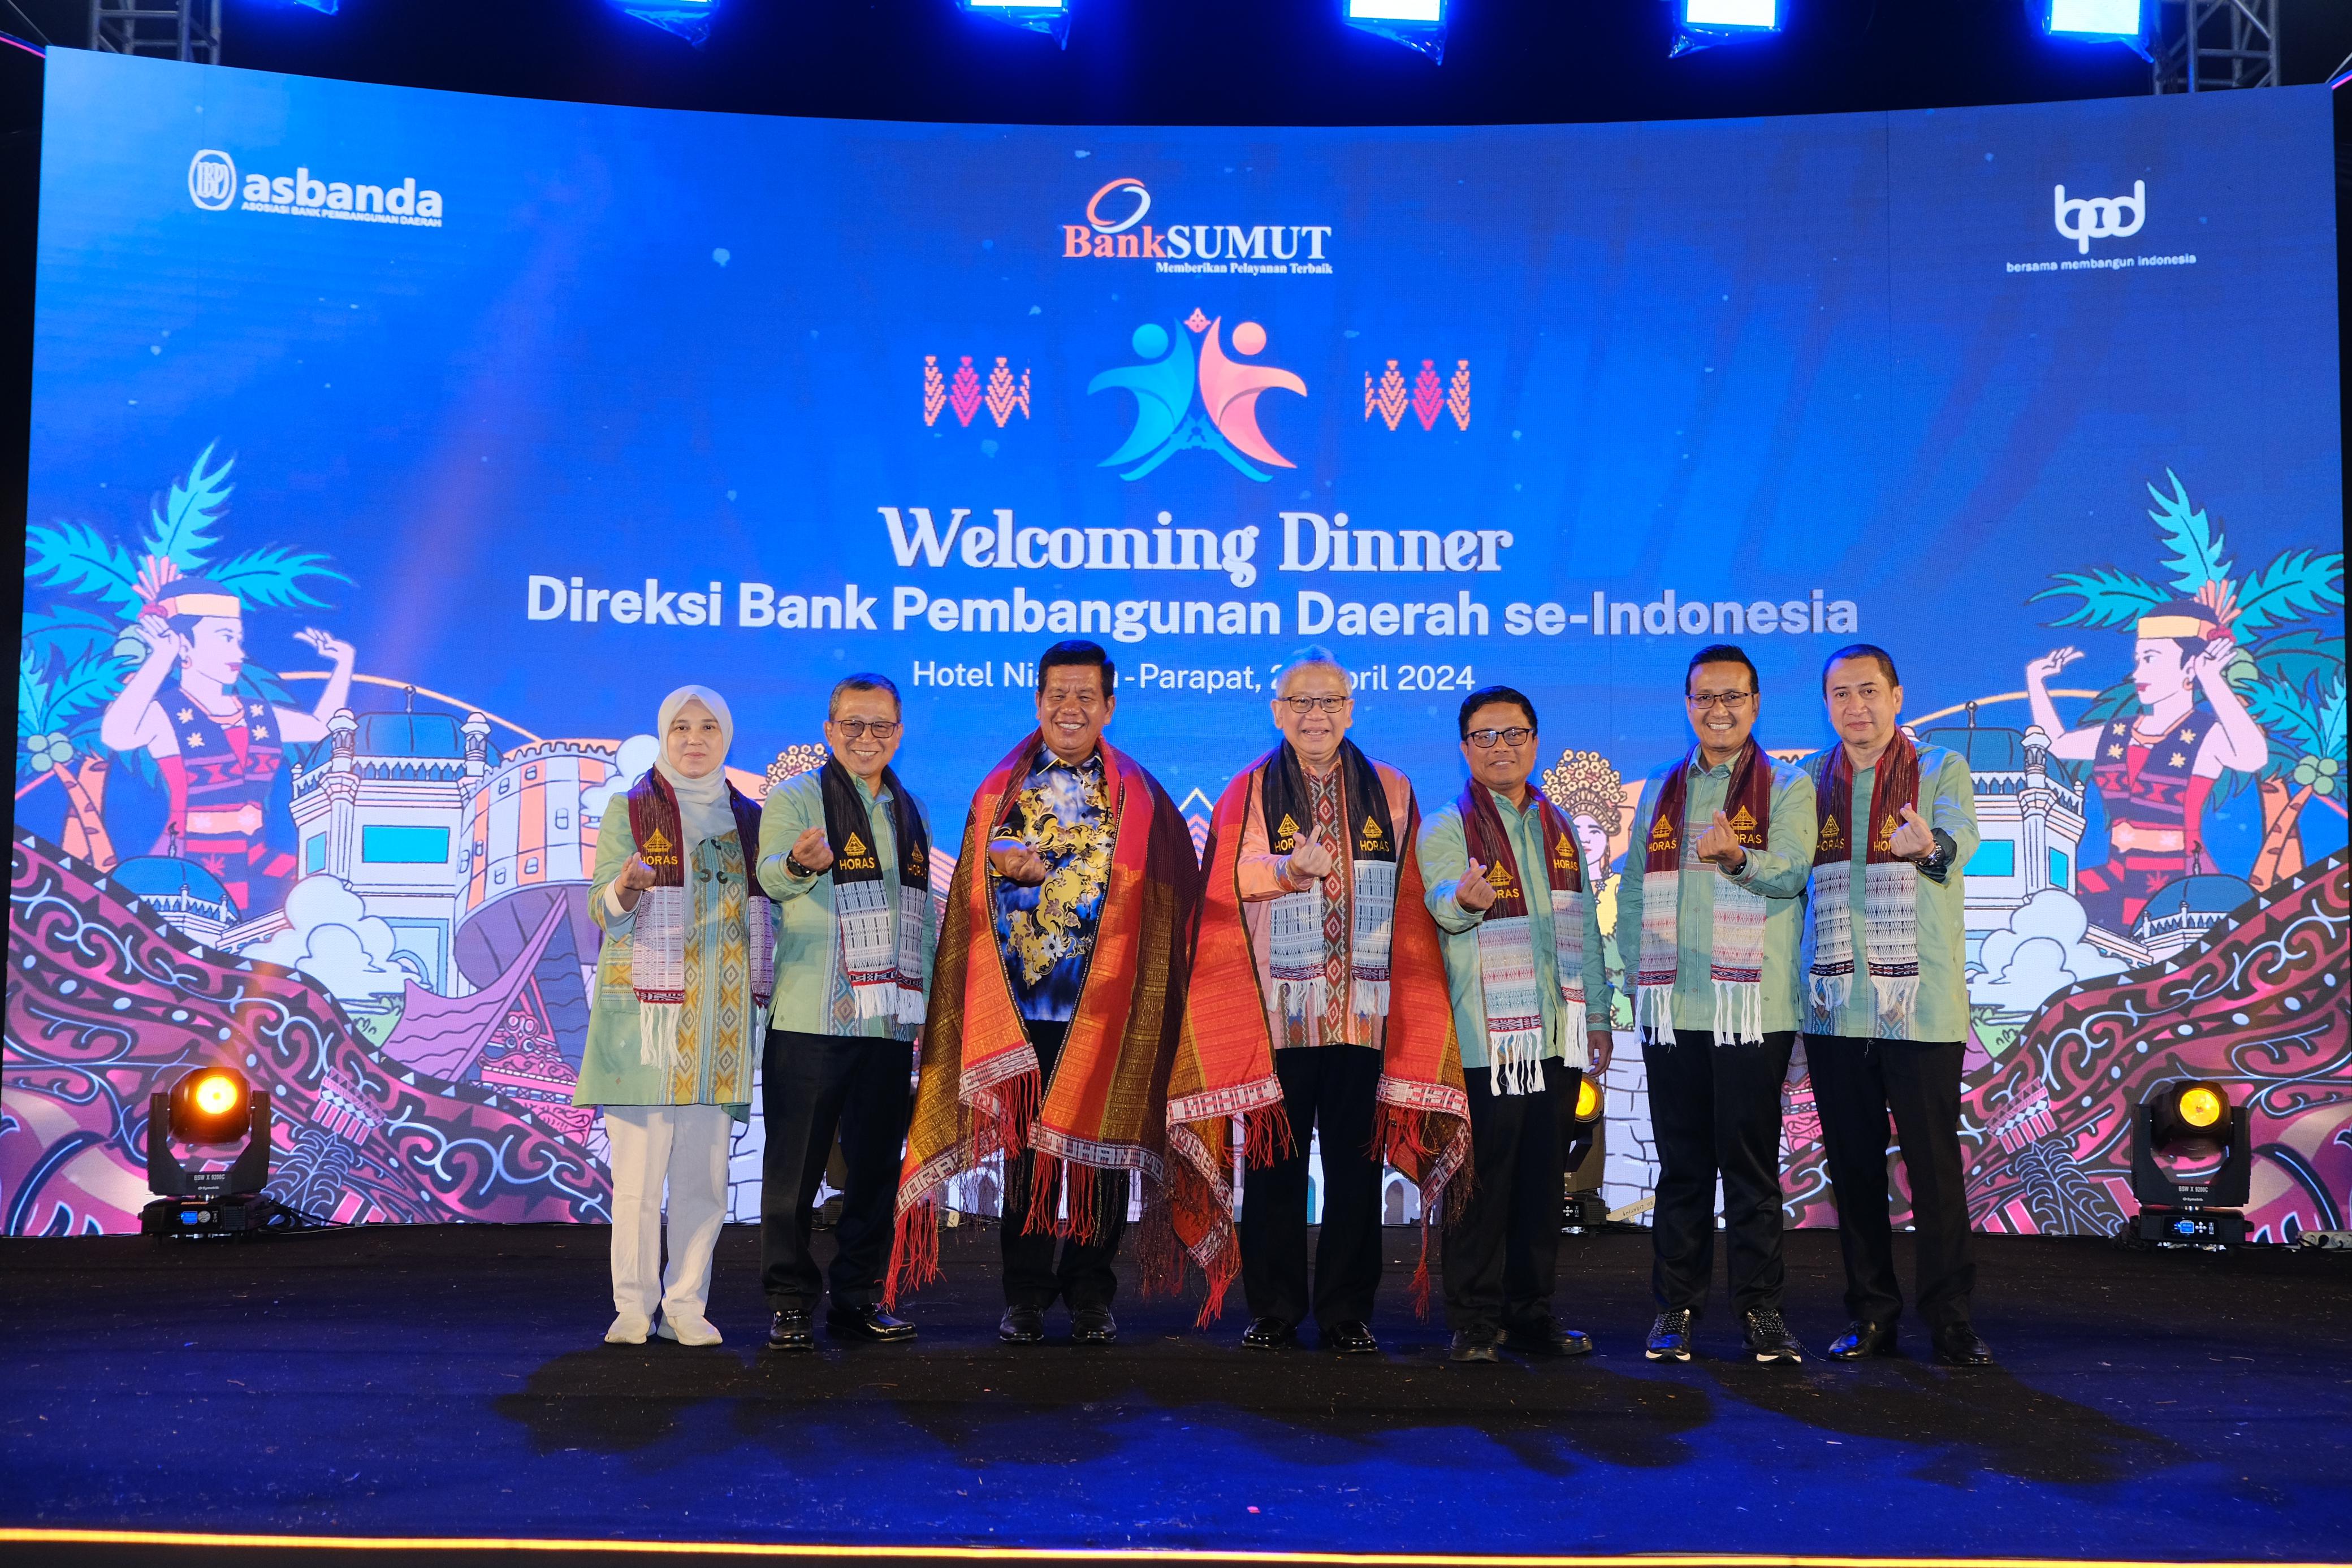 Welcoming Dinner Direksi BPD se-Indonesia, Bank Sumut Promosikan Danau Toba